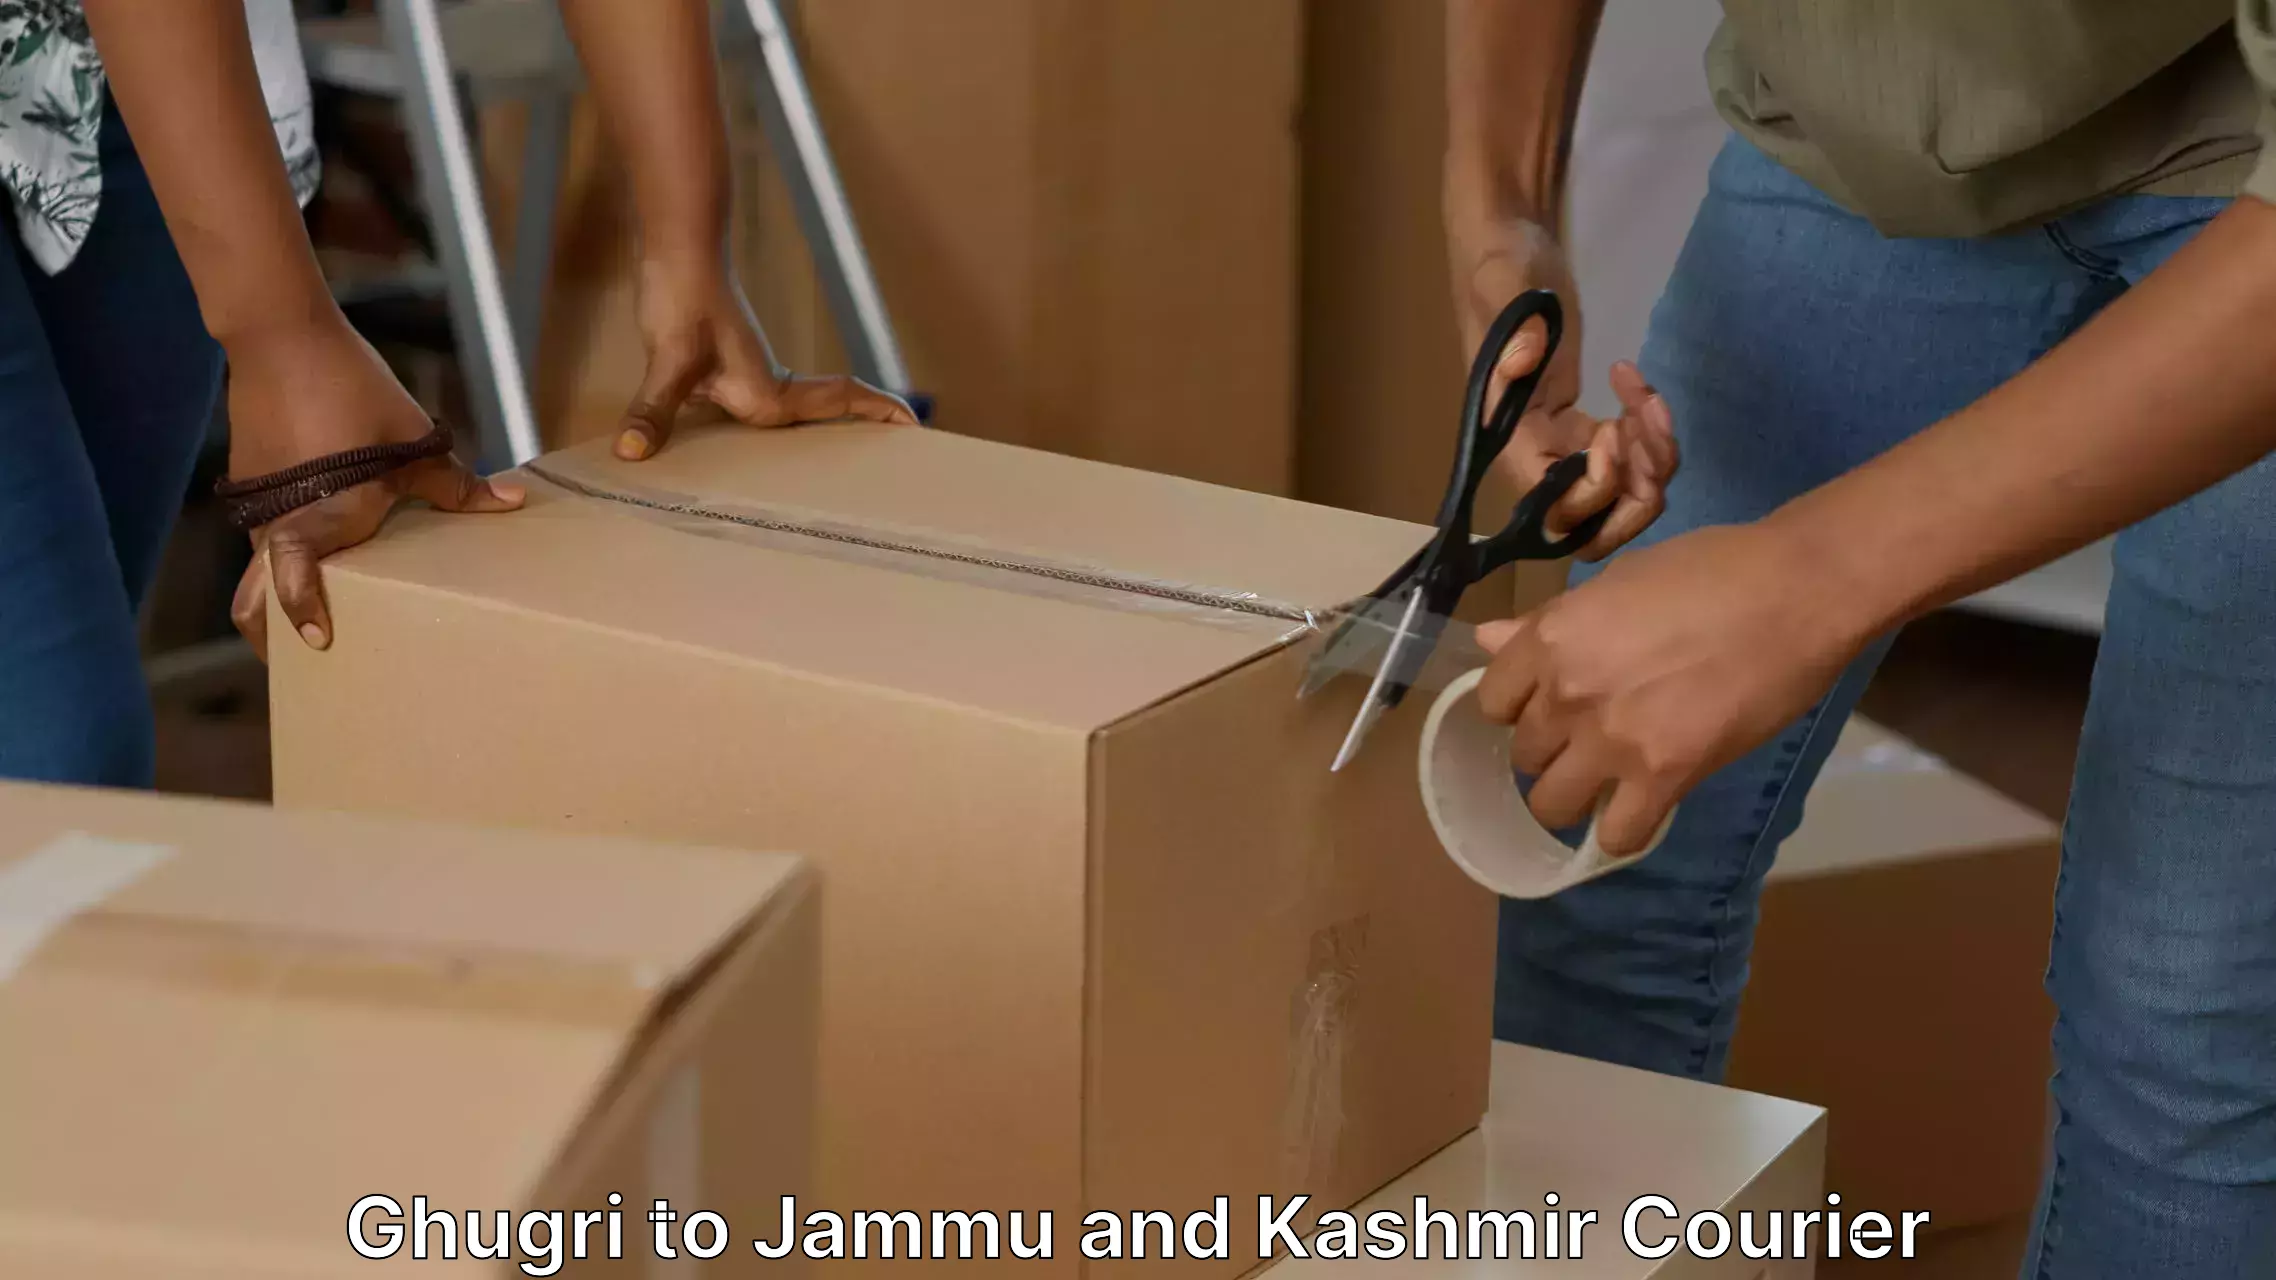 Furniture transport and logistics in Ghugri to Jammu